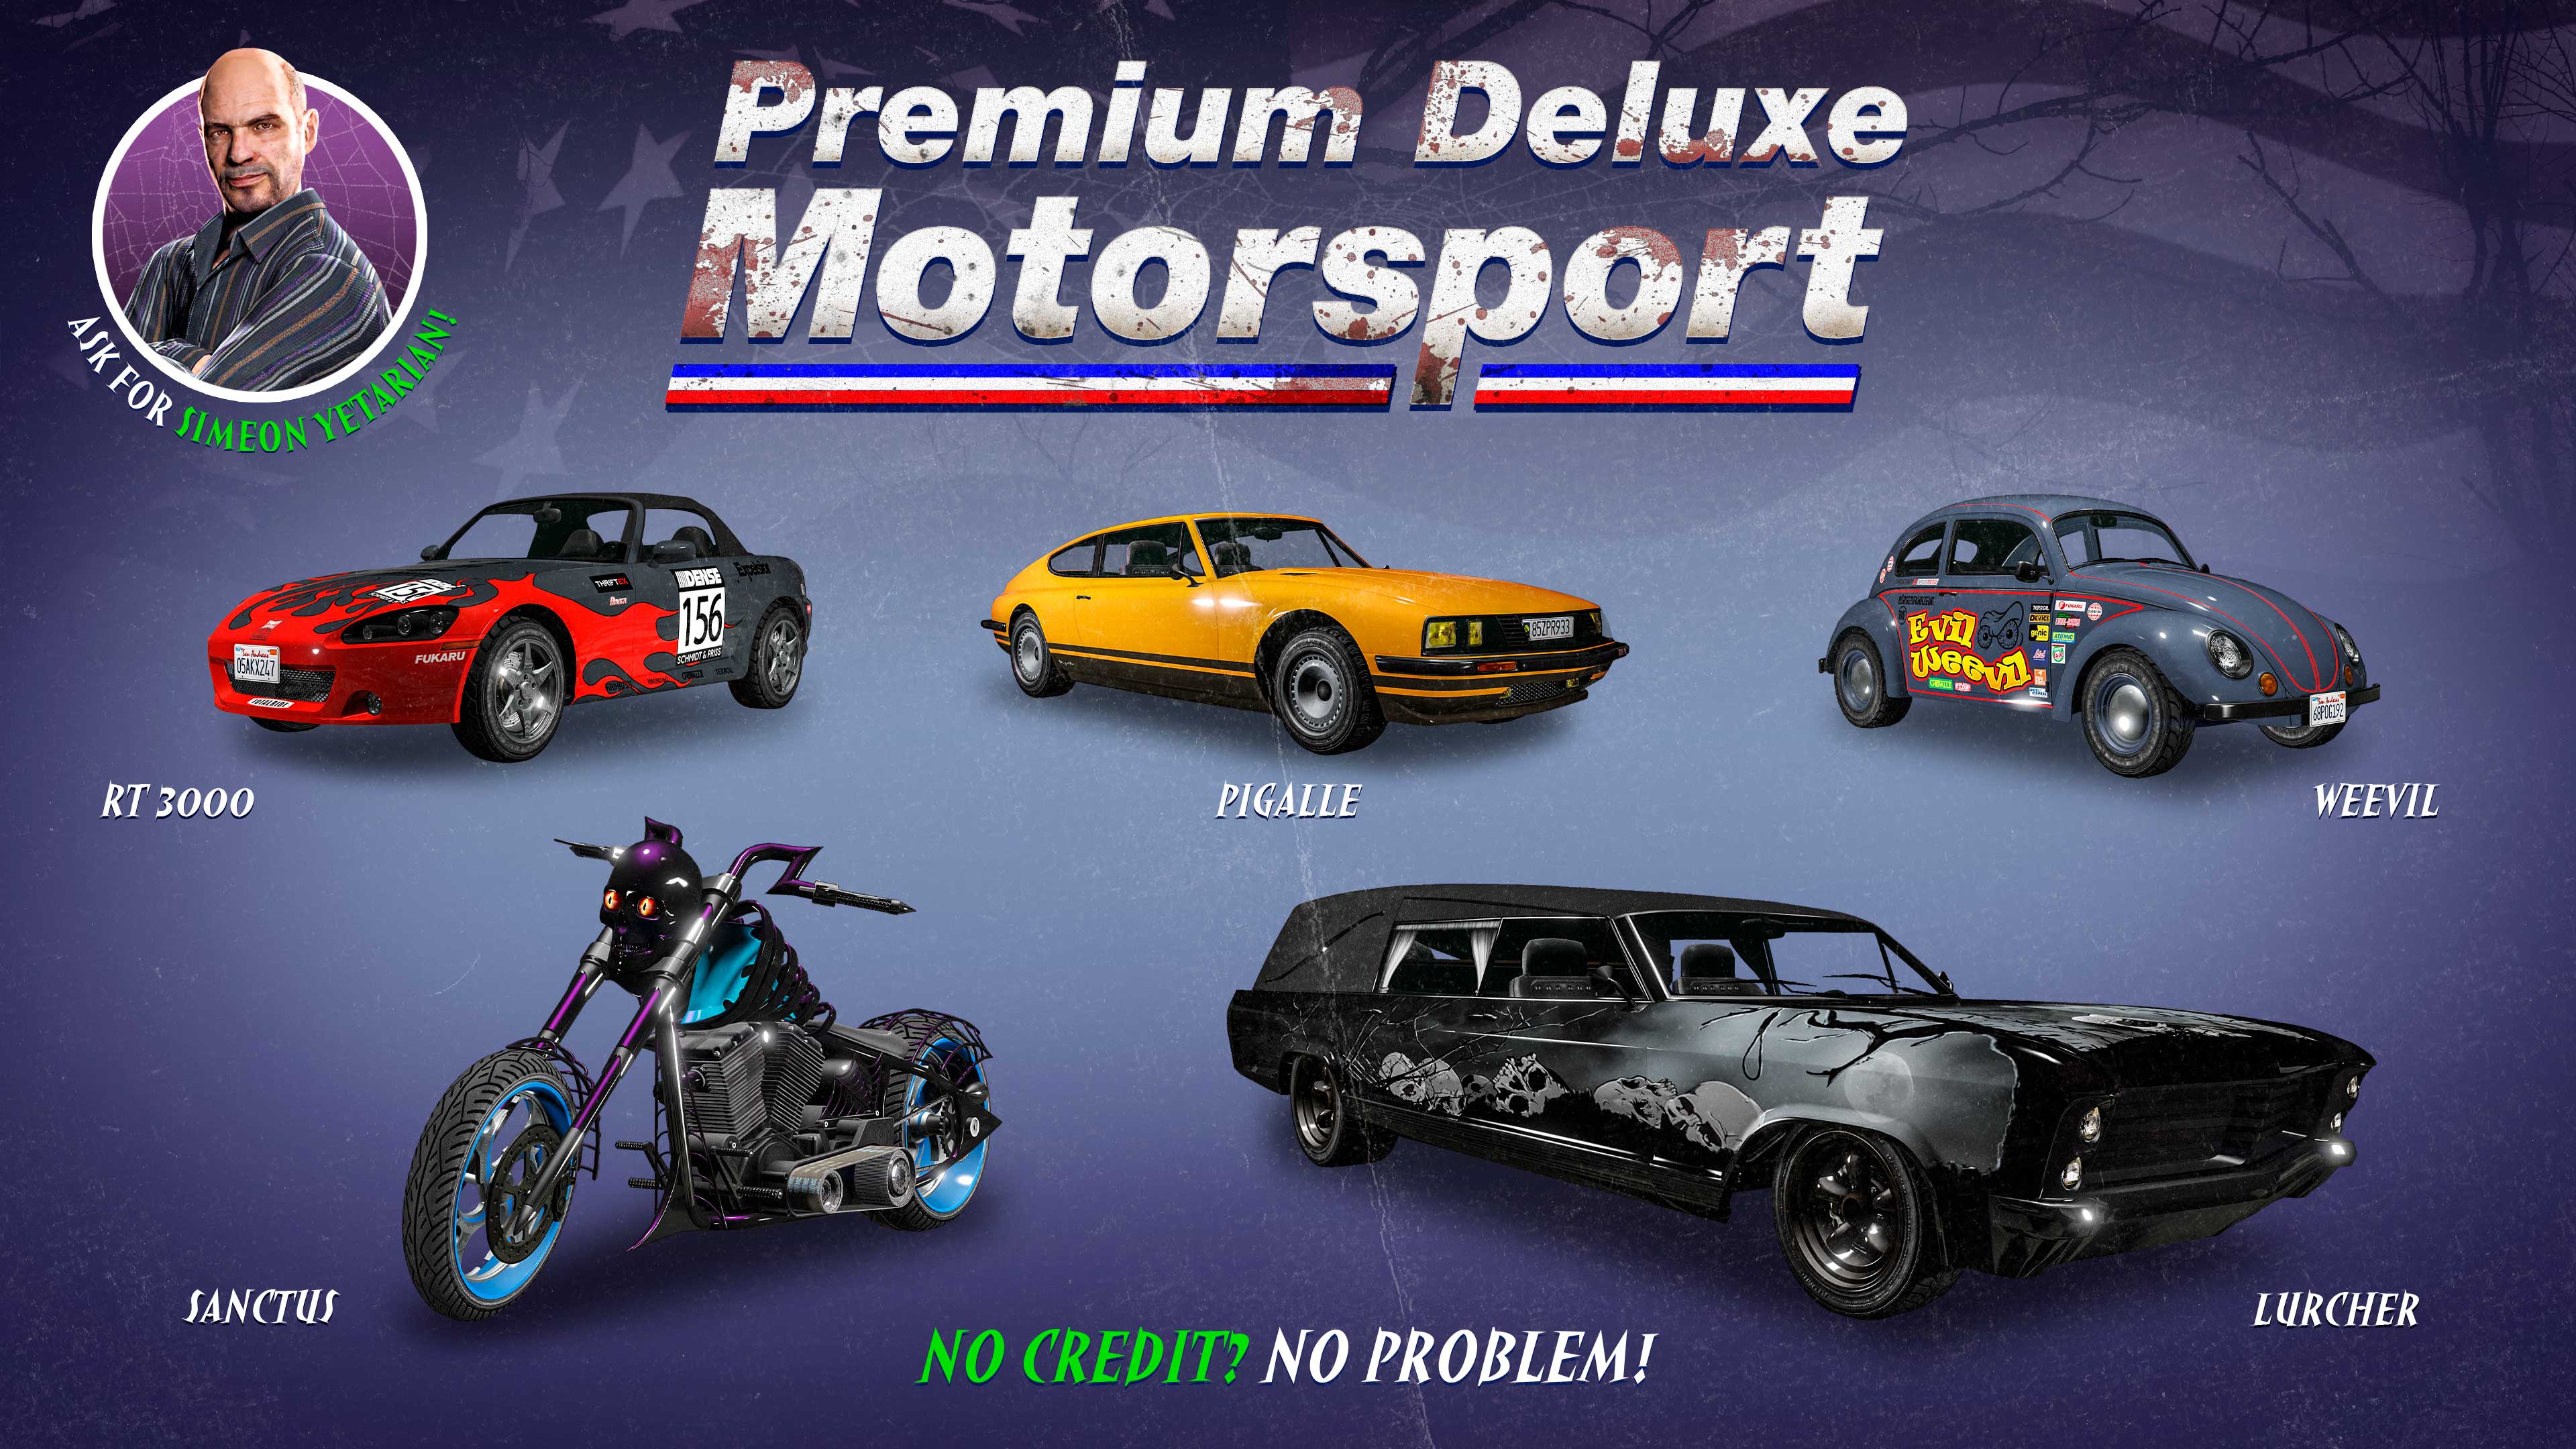 pôster da concessionária Premium Deluxe Motorsport